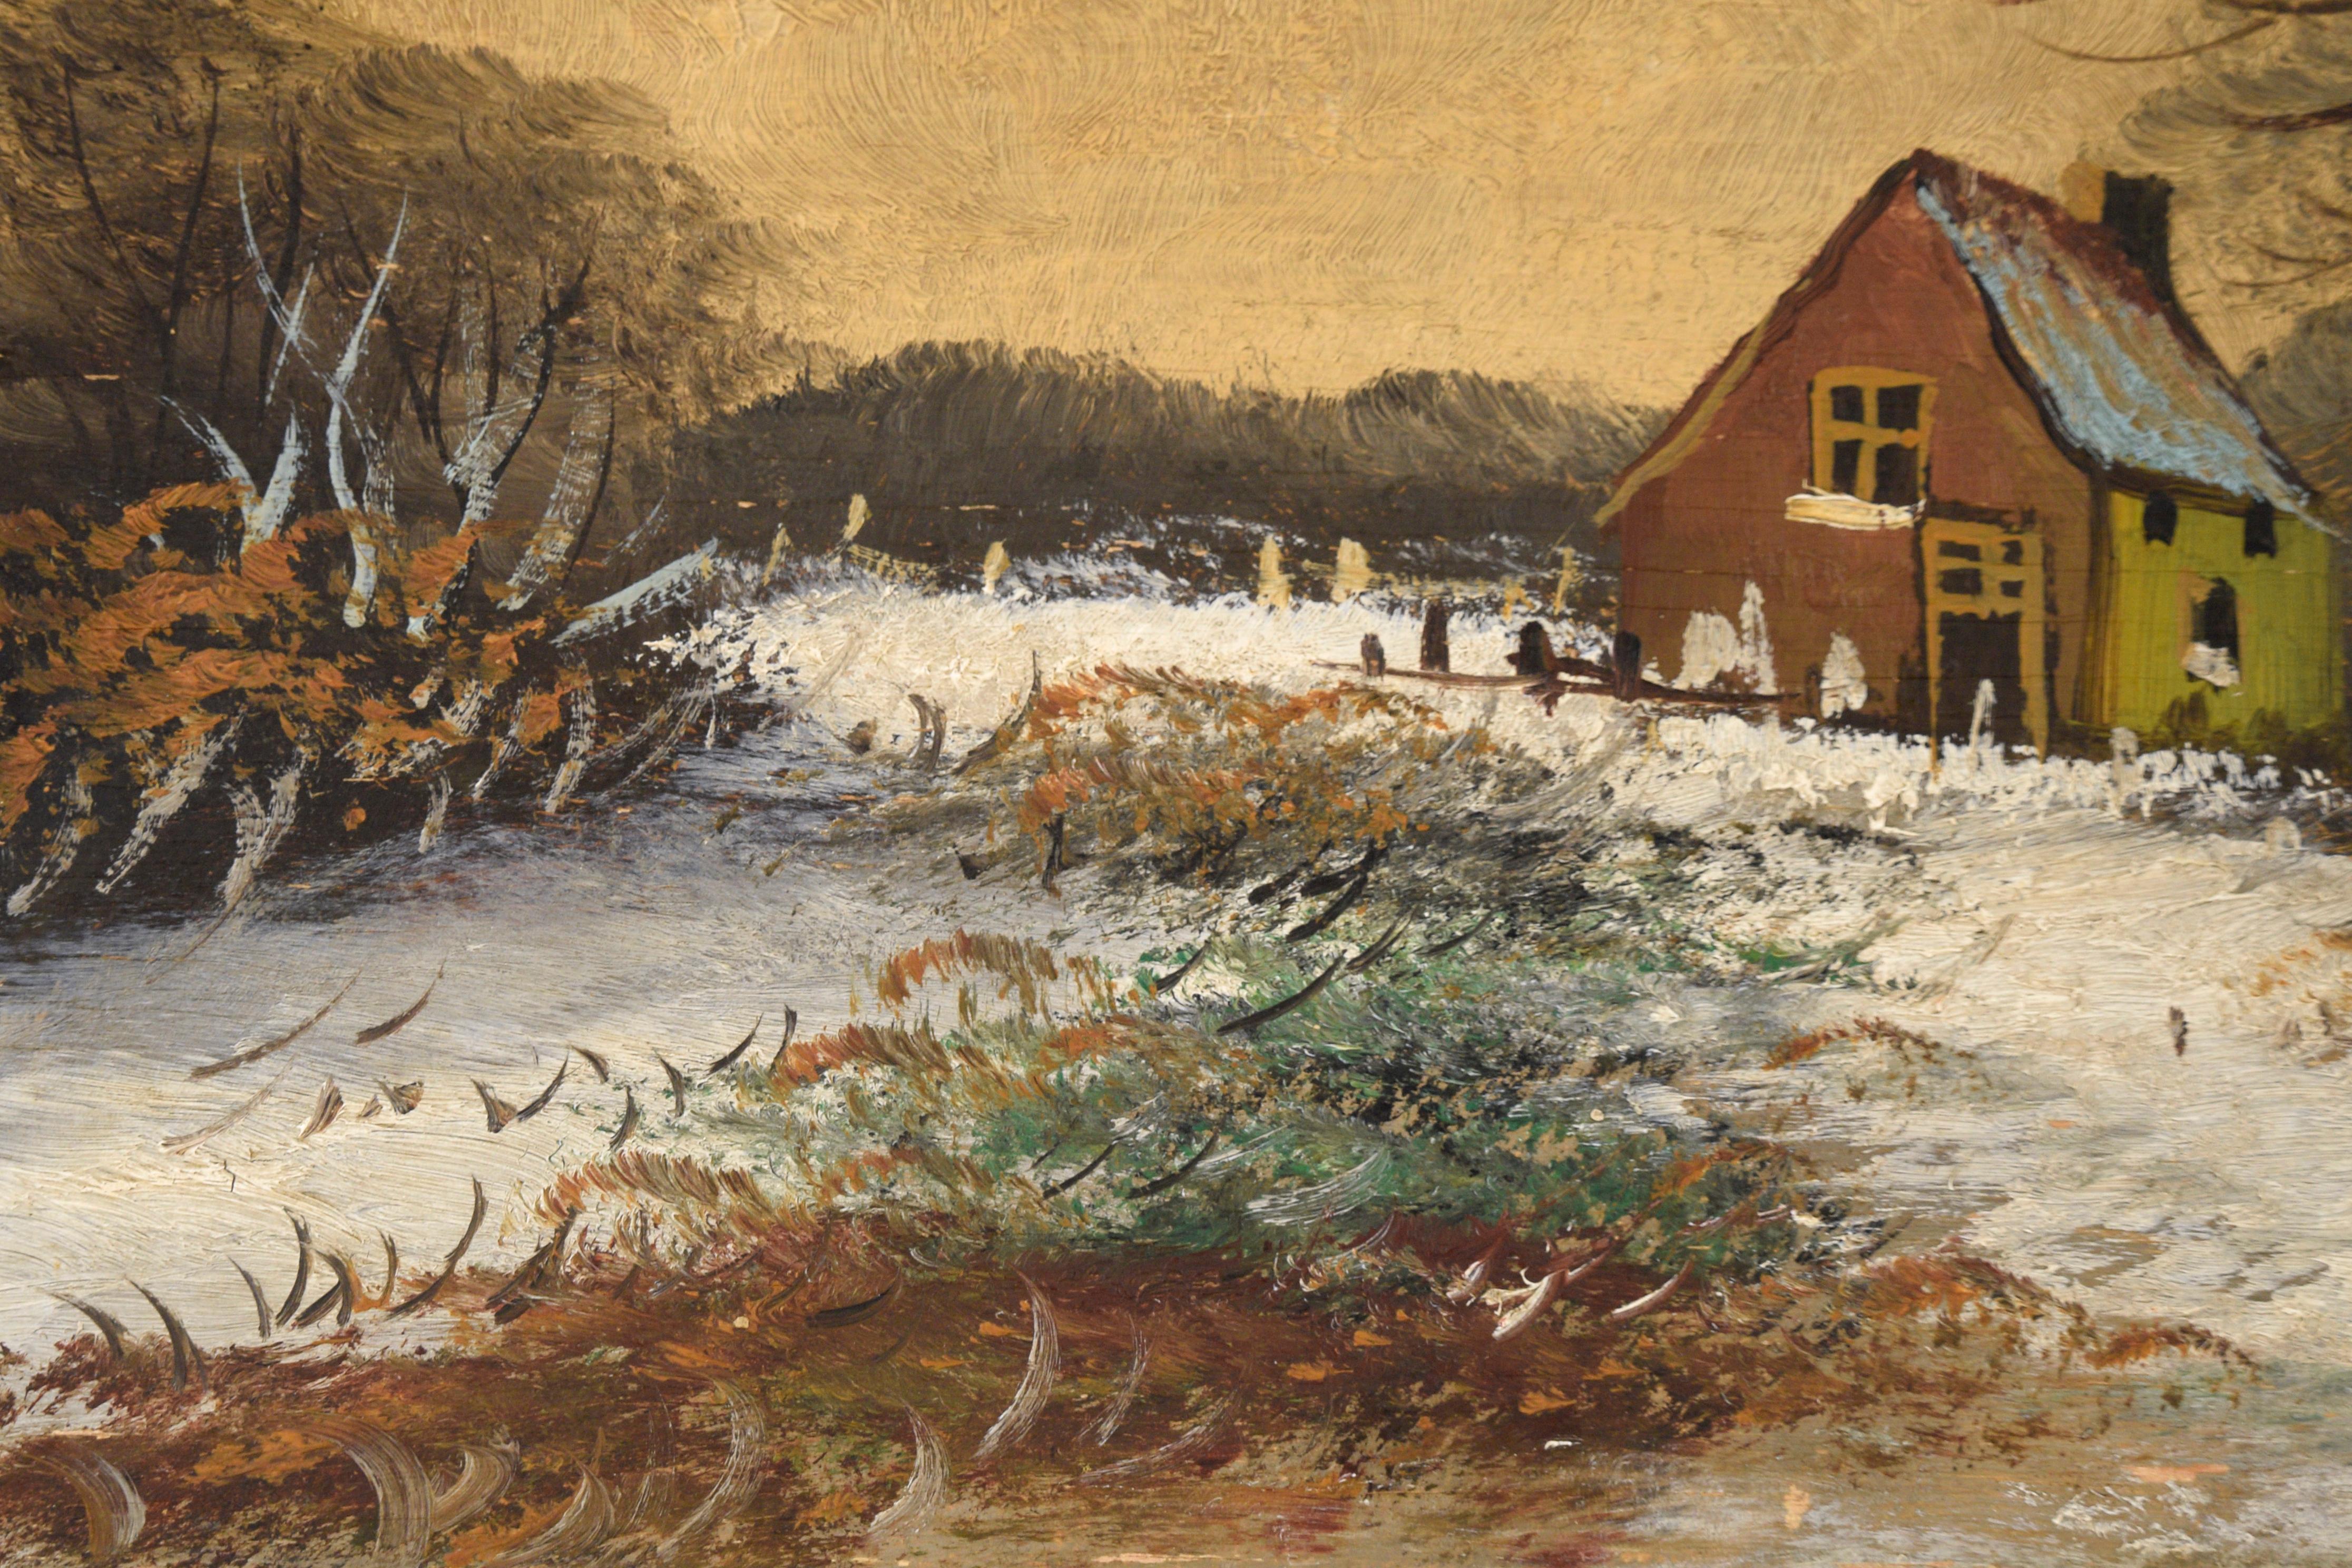 Paysage d'hiver serein réalisé par un artiste inconnu. Une couche de neige fraîchement tombée recouvre le paysage. Deux grands arbres sont au premier plan de la composition, avec une petite ferme derrière eux. Le ciel est rendu dans des tons de gris